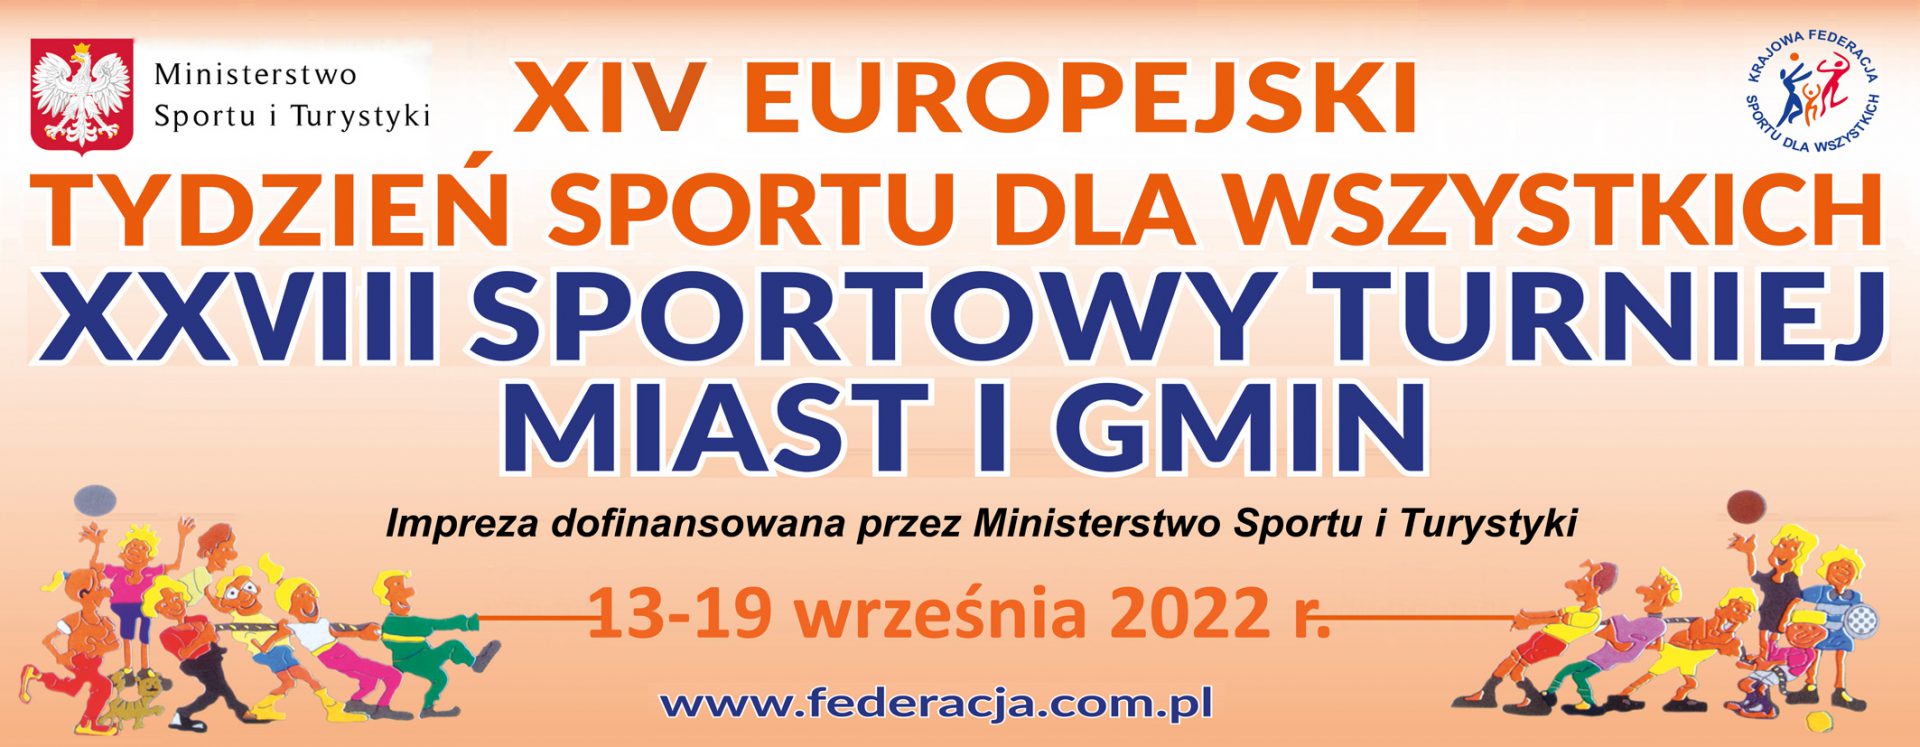 plakat promujacy XIV Europejski Tydzień Sportu dla Wszystkich